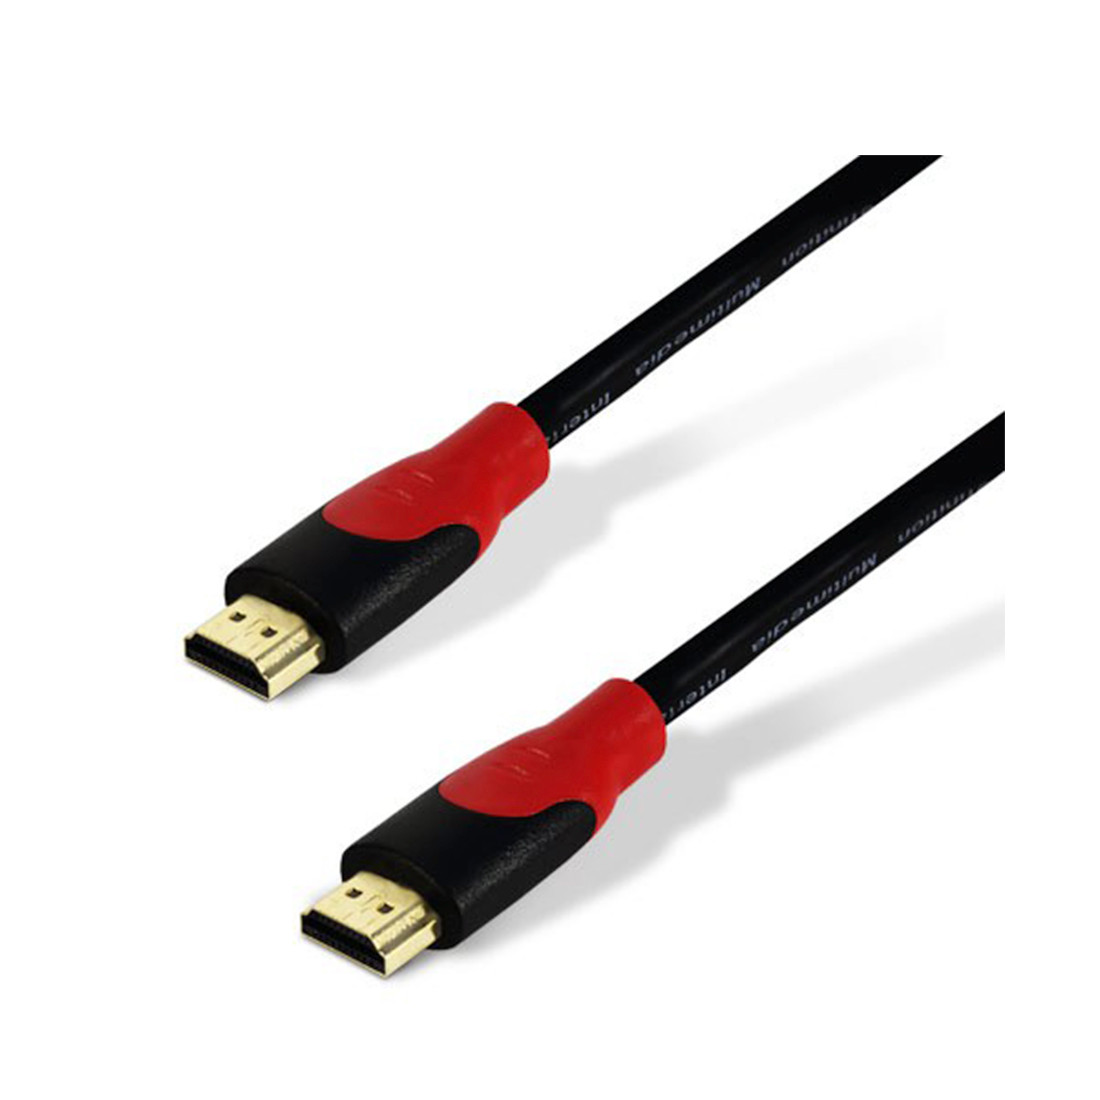 Интерфейсный кабель HDMI-HDMI, 30В, в блистерной упаковке, модель SH6016-5B, бренд SHIP